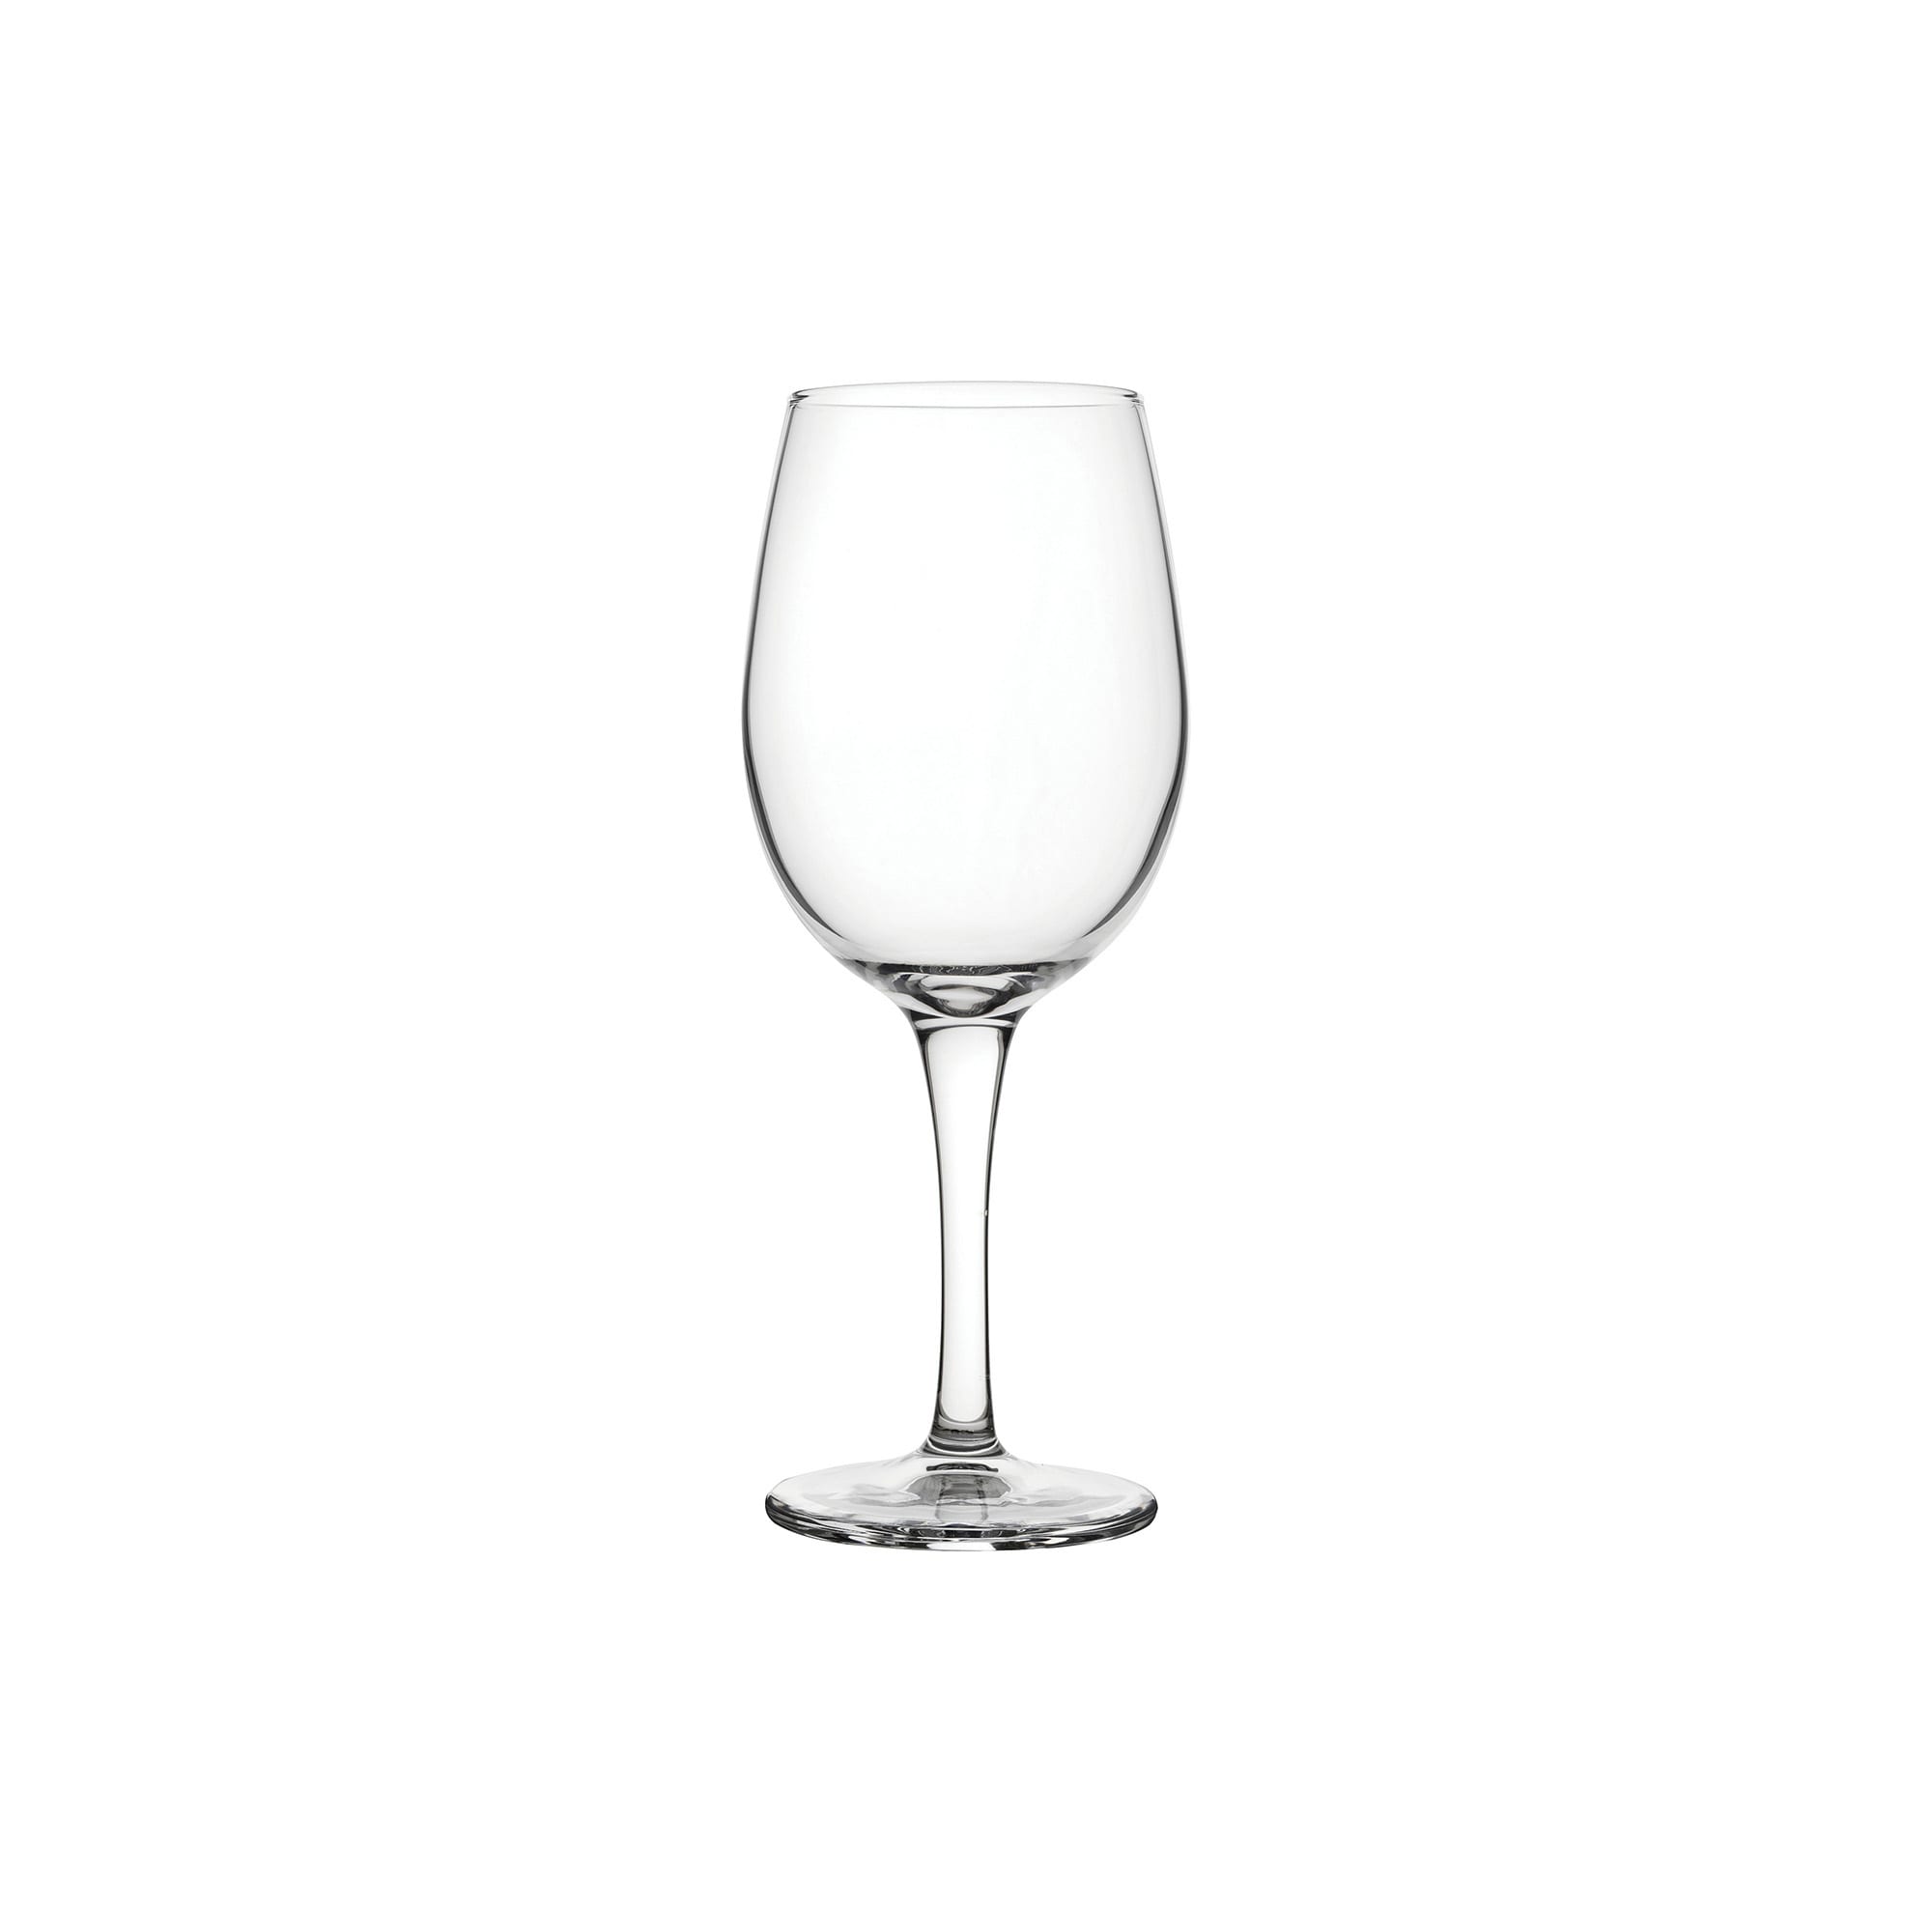 Arcoroc Q2517 16 oz Universal Tall Wine Glass